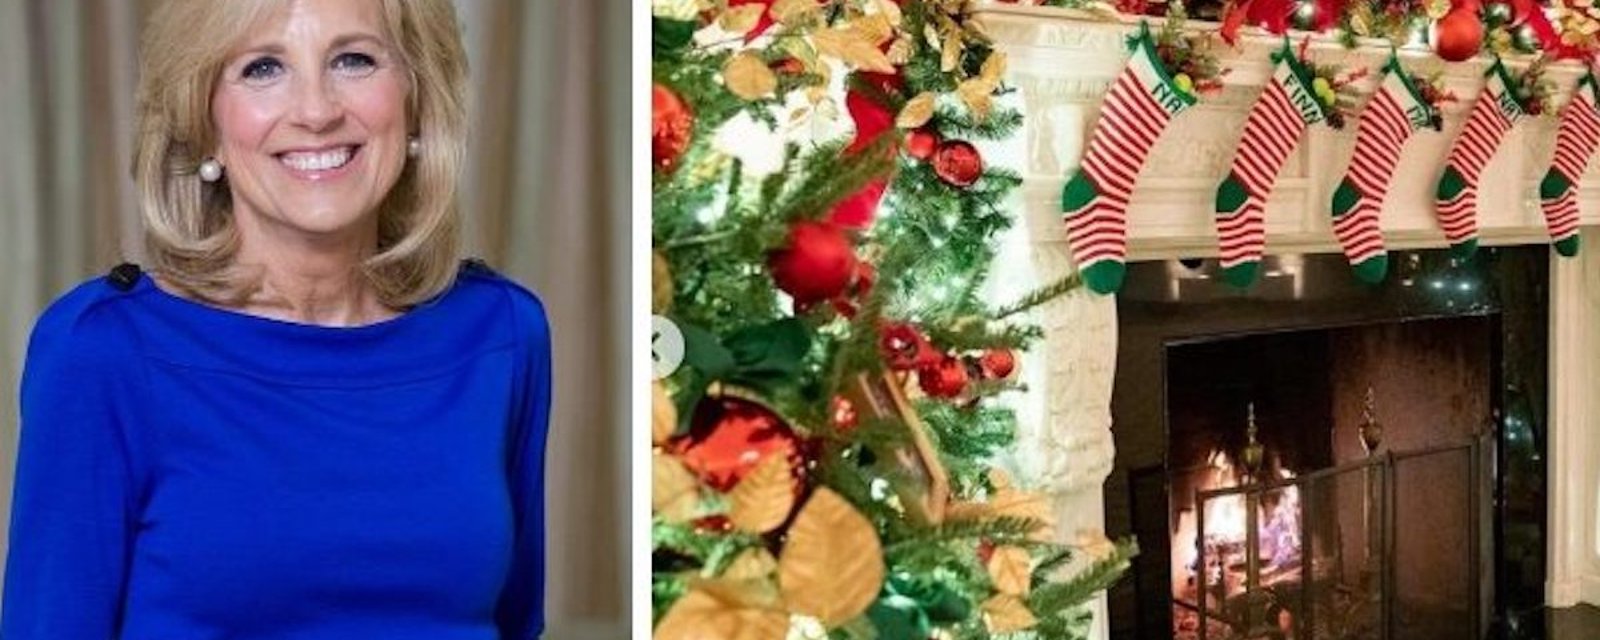 Voici un aperçu des décorations de Noël à la Maison Blanche cette année